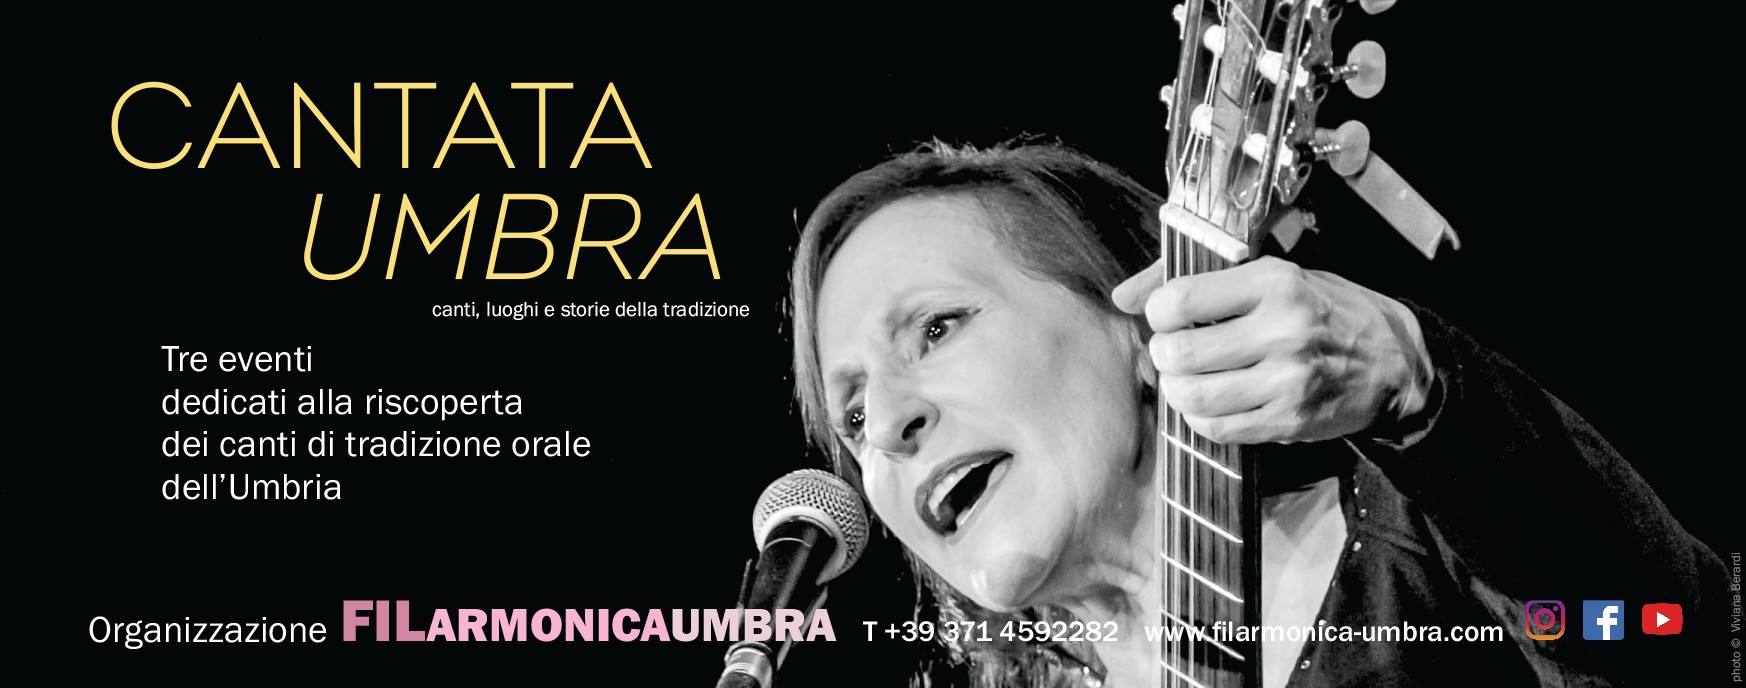 filumbra 2022 - cantata umbra - A5.cdr